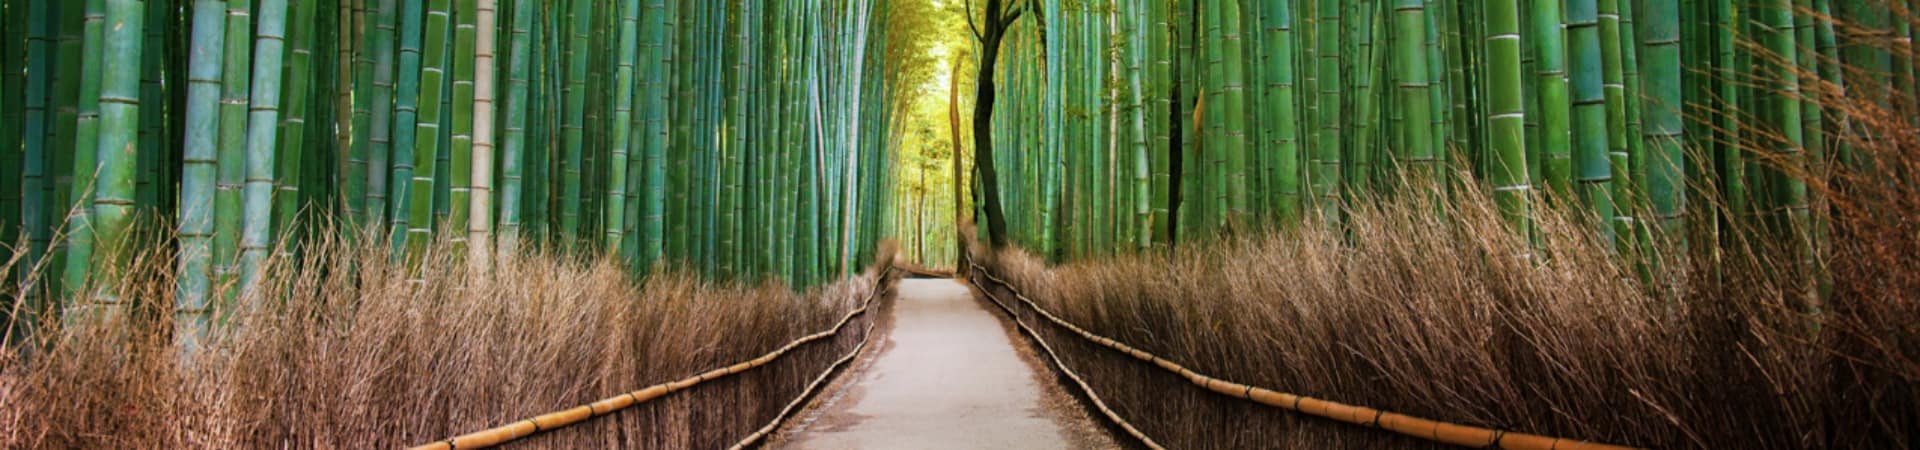 floresta de bambu, Arashiyama, Quioto, Pacote Japão